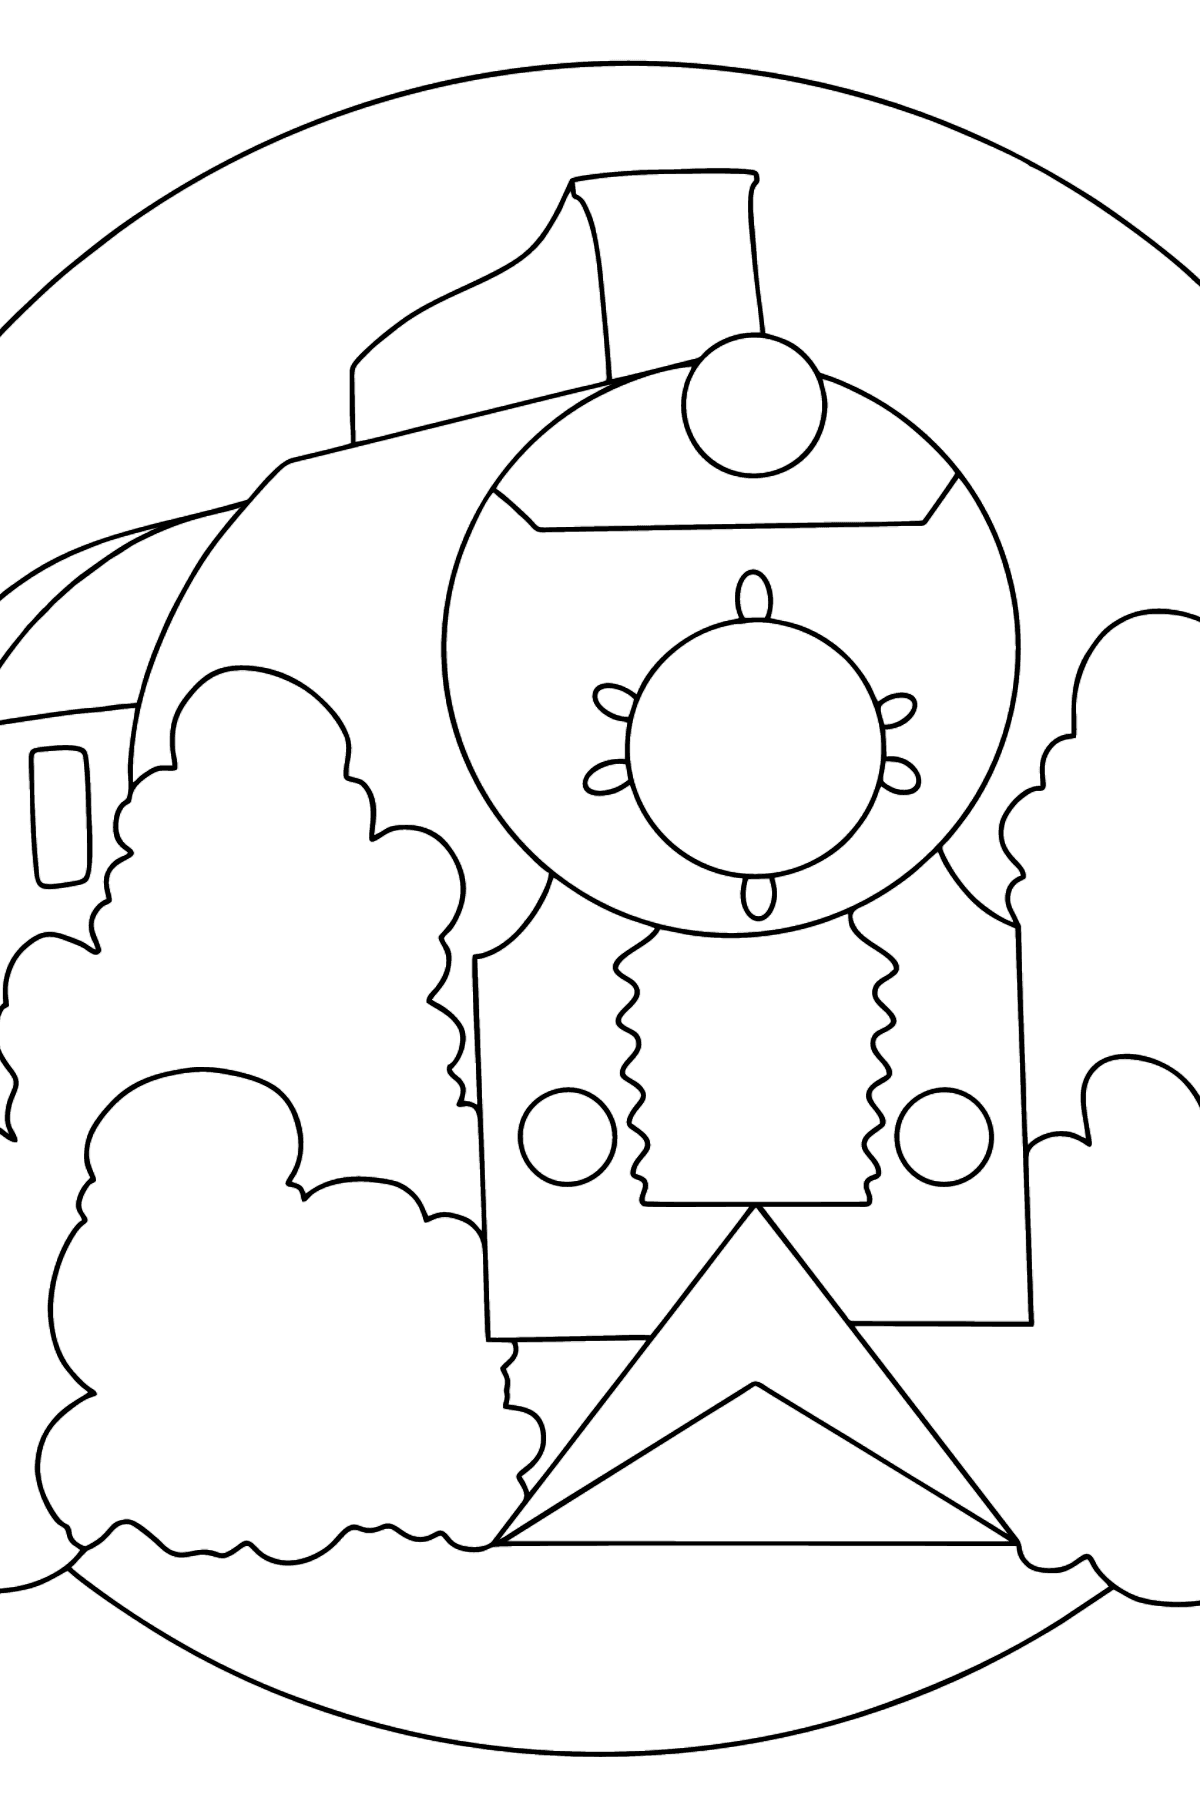 Tegning til fargelegging lokomotiv med vogner - Tegninger til fargelegging for barn